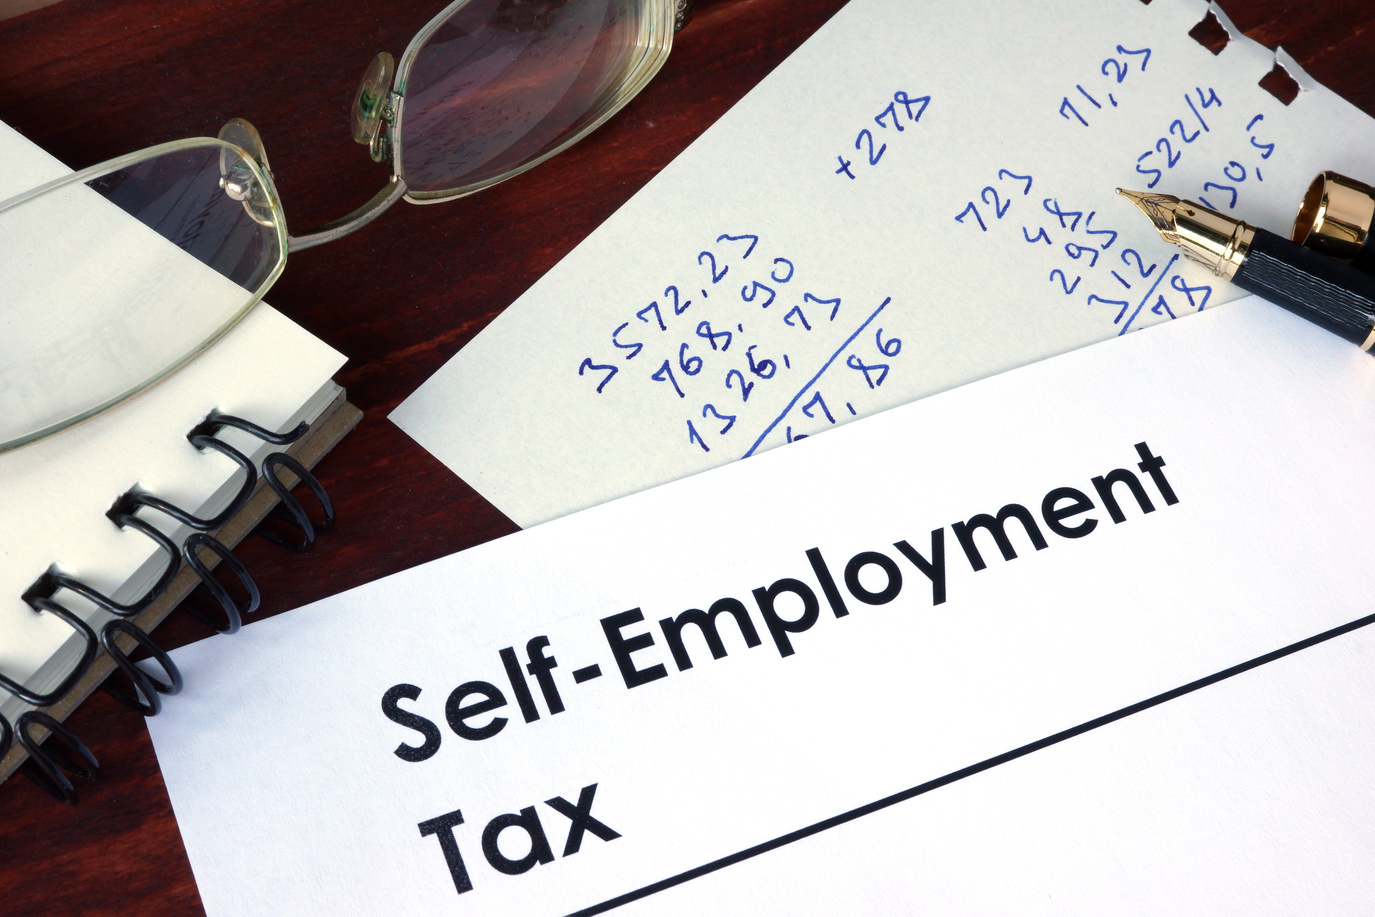 self-employment tax